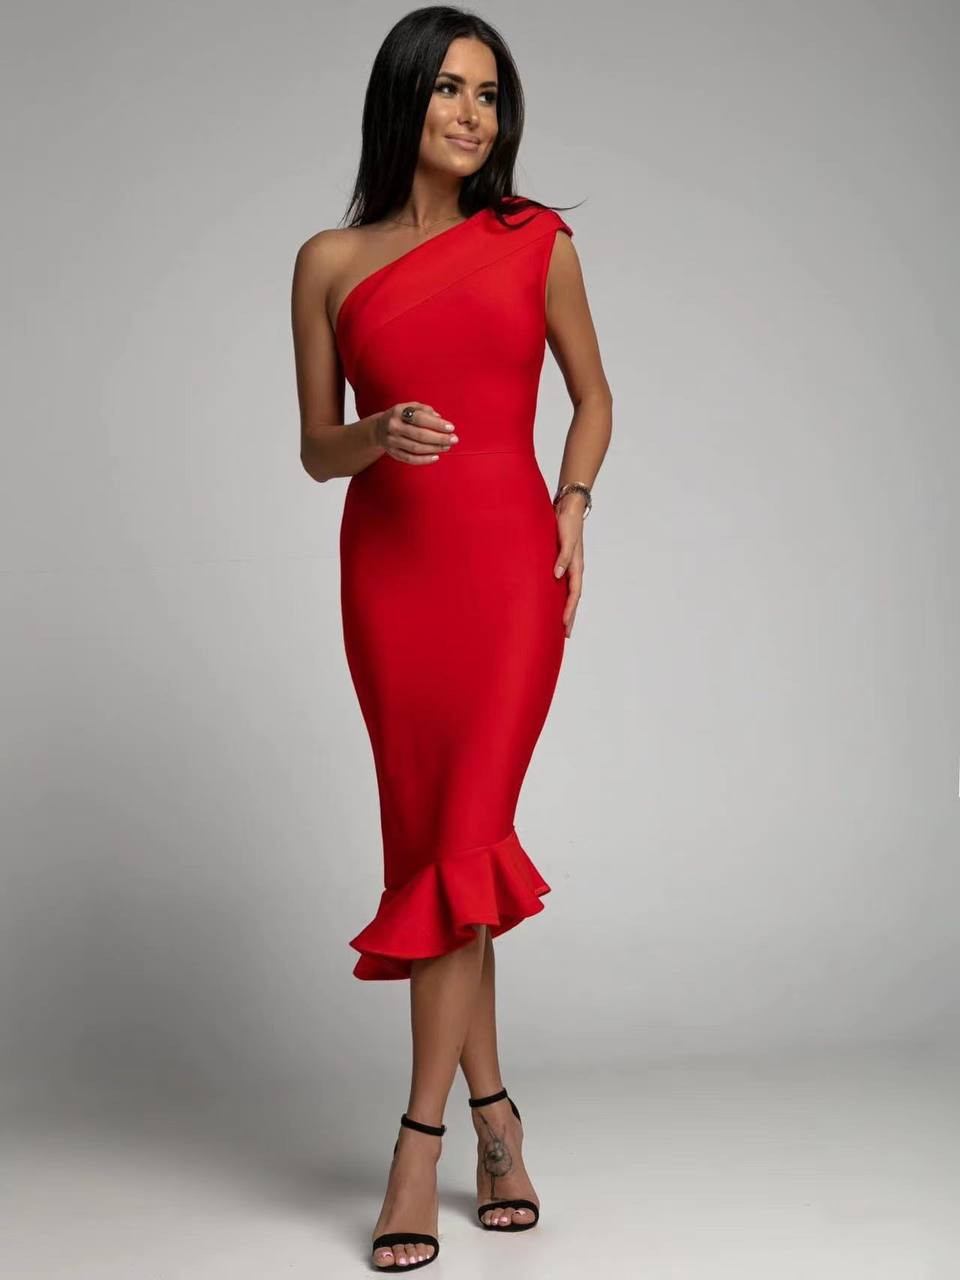 Γυναικείο φόρεμα με μήκος κάτω απο το γόνατο 22731 κόκκινο